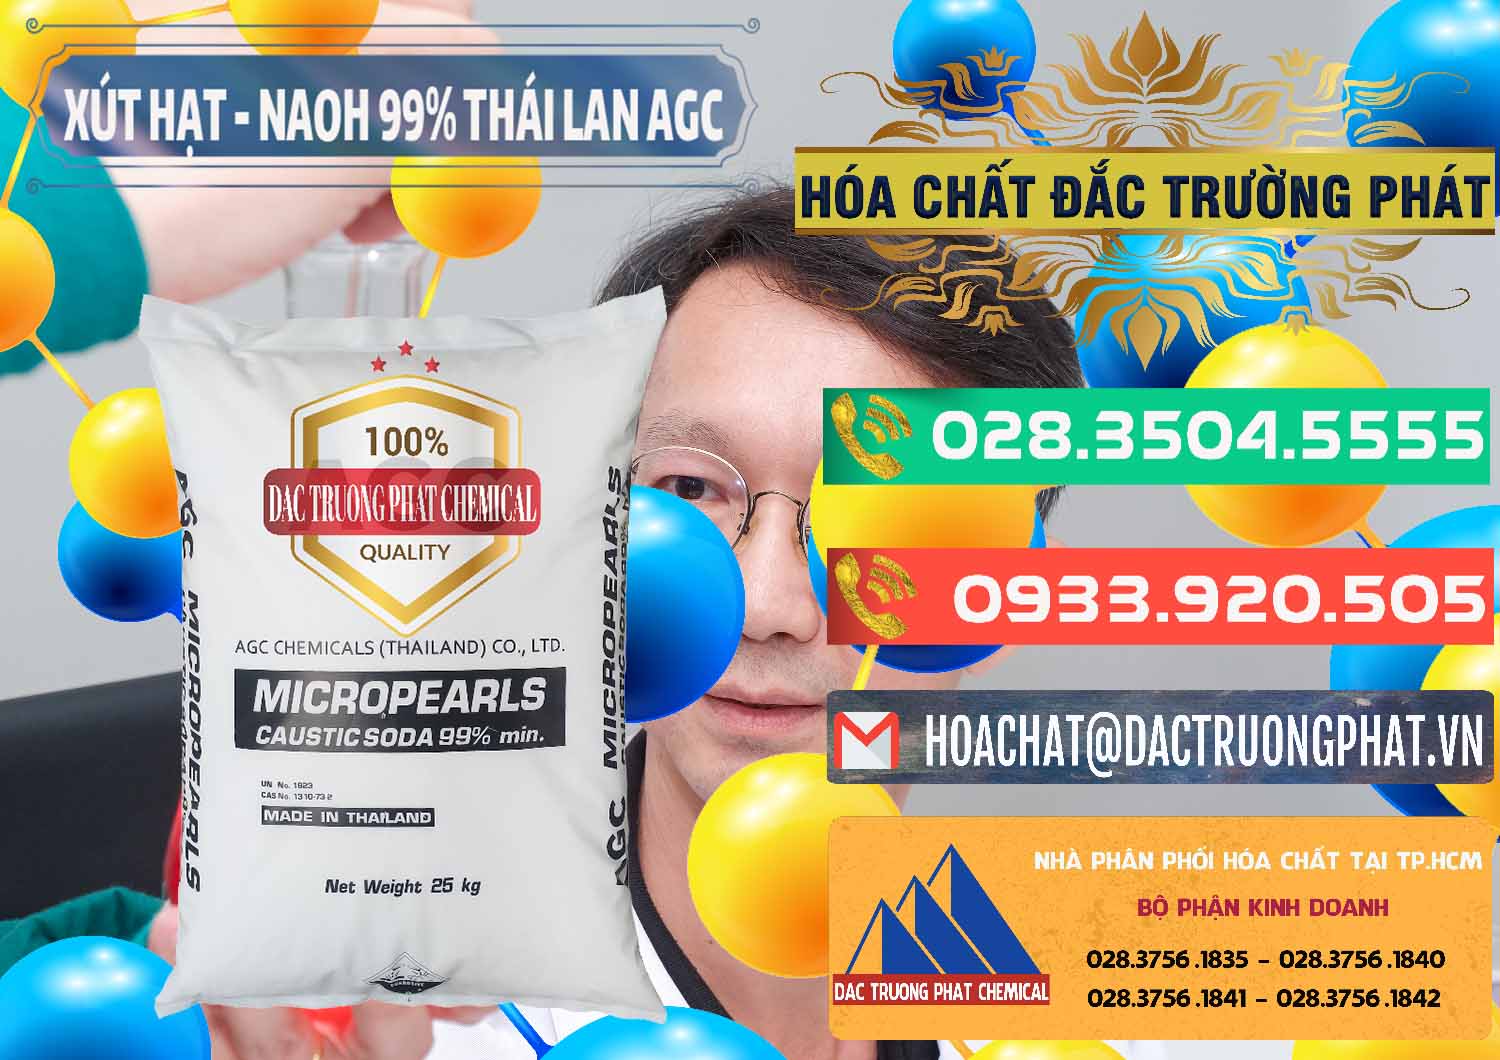 Chuyên bán và phân phối Xút Hạt - NaOH Bột 99% AGC Thái Lan - 0168 - Nơi chuyên phân phối & cung ứng hóa chất tại TP.HCM - congtyhoachat.com.vn